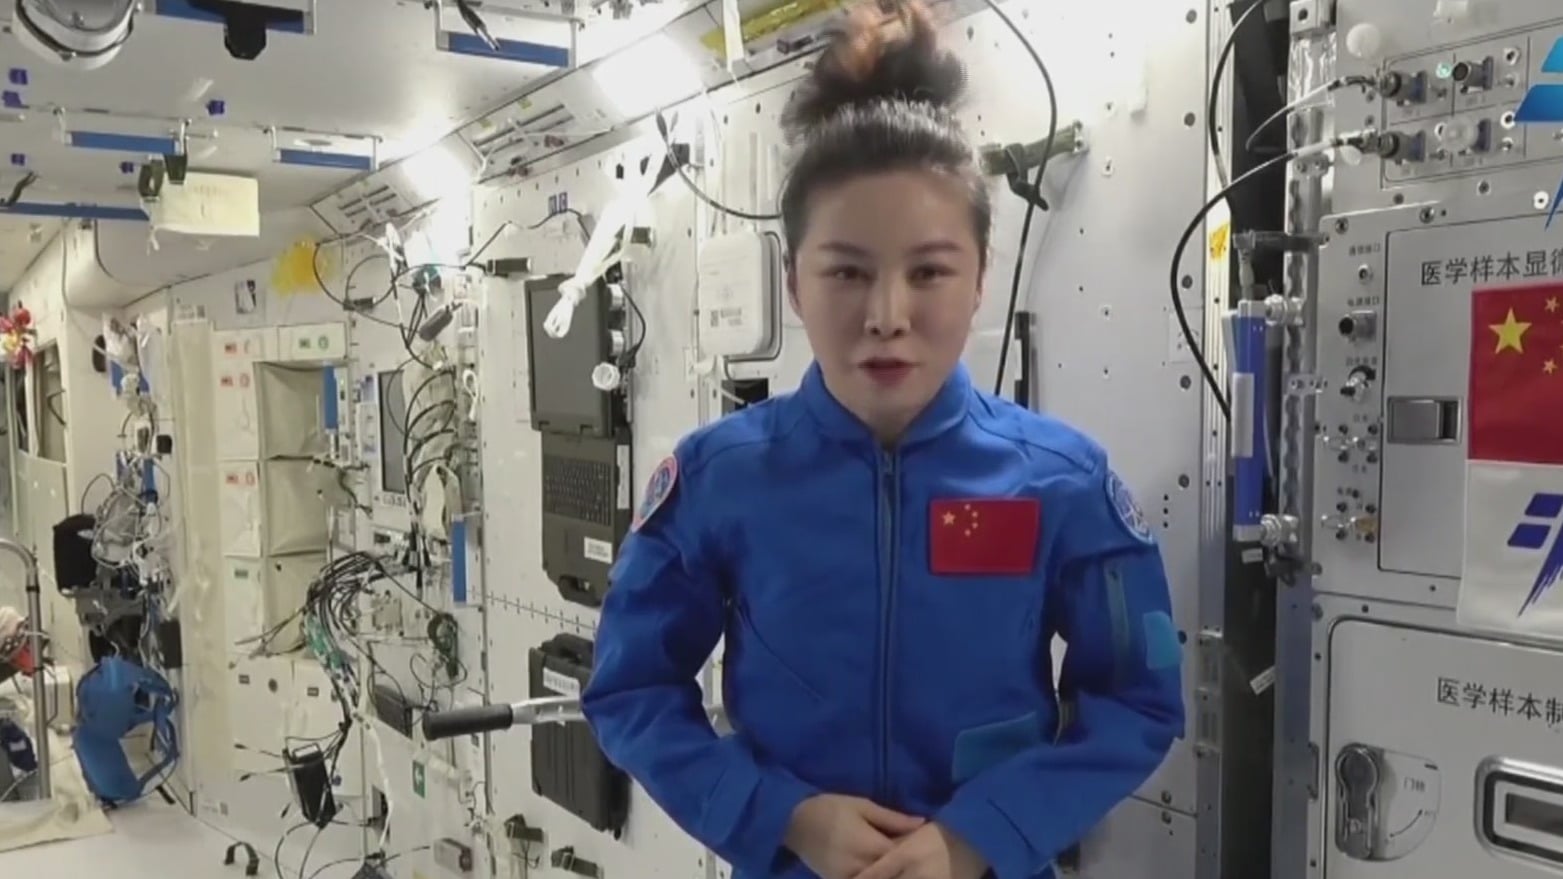 mujer astronauta manda mensaje con motivo del dia internacional de la mujer